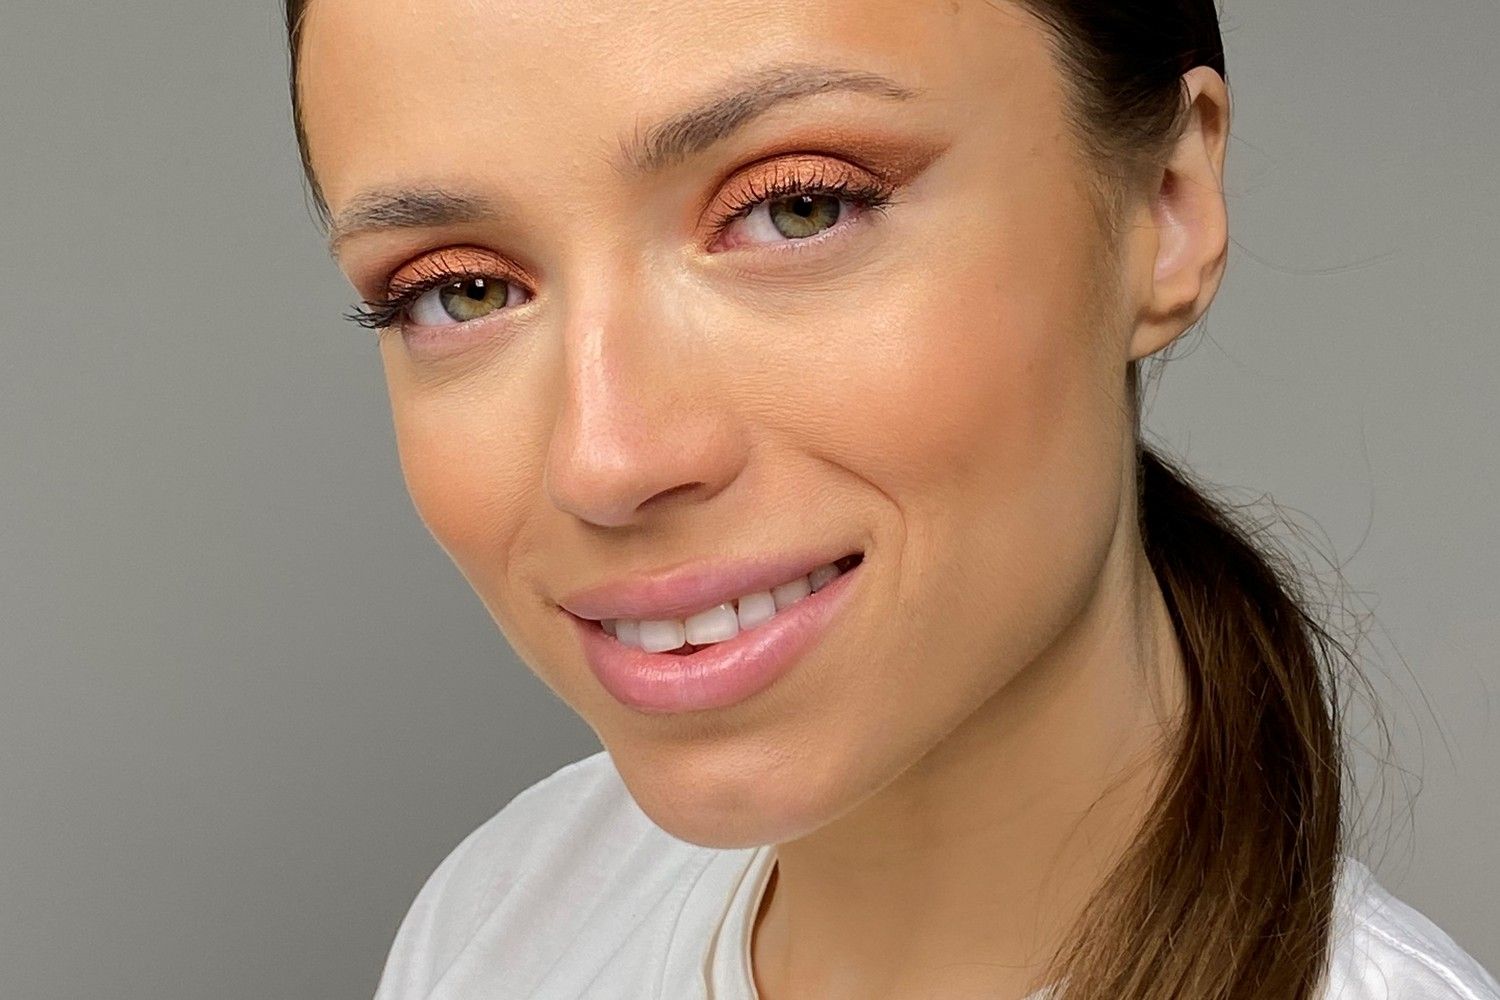 Как определить форму глаз и правильно подобрать макияж - Лайфхакер